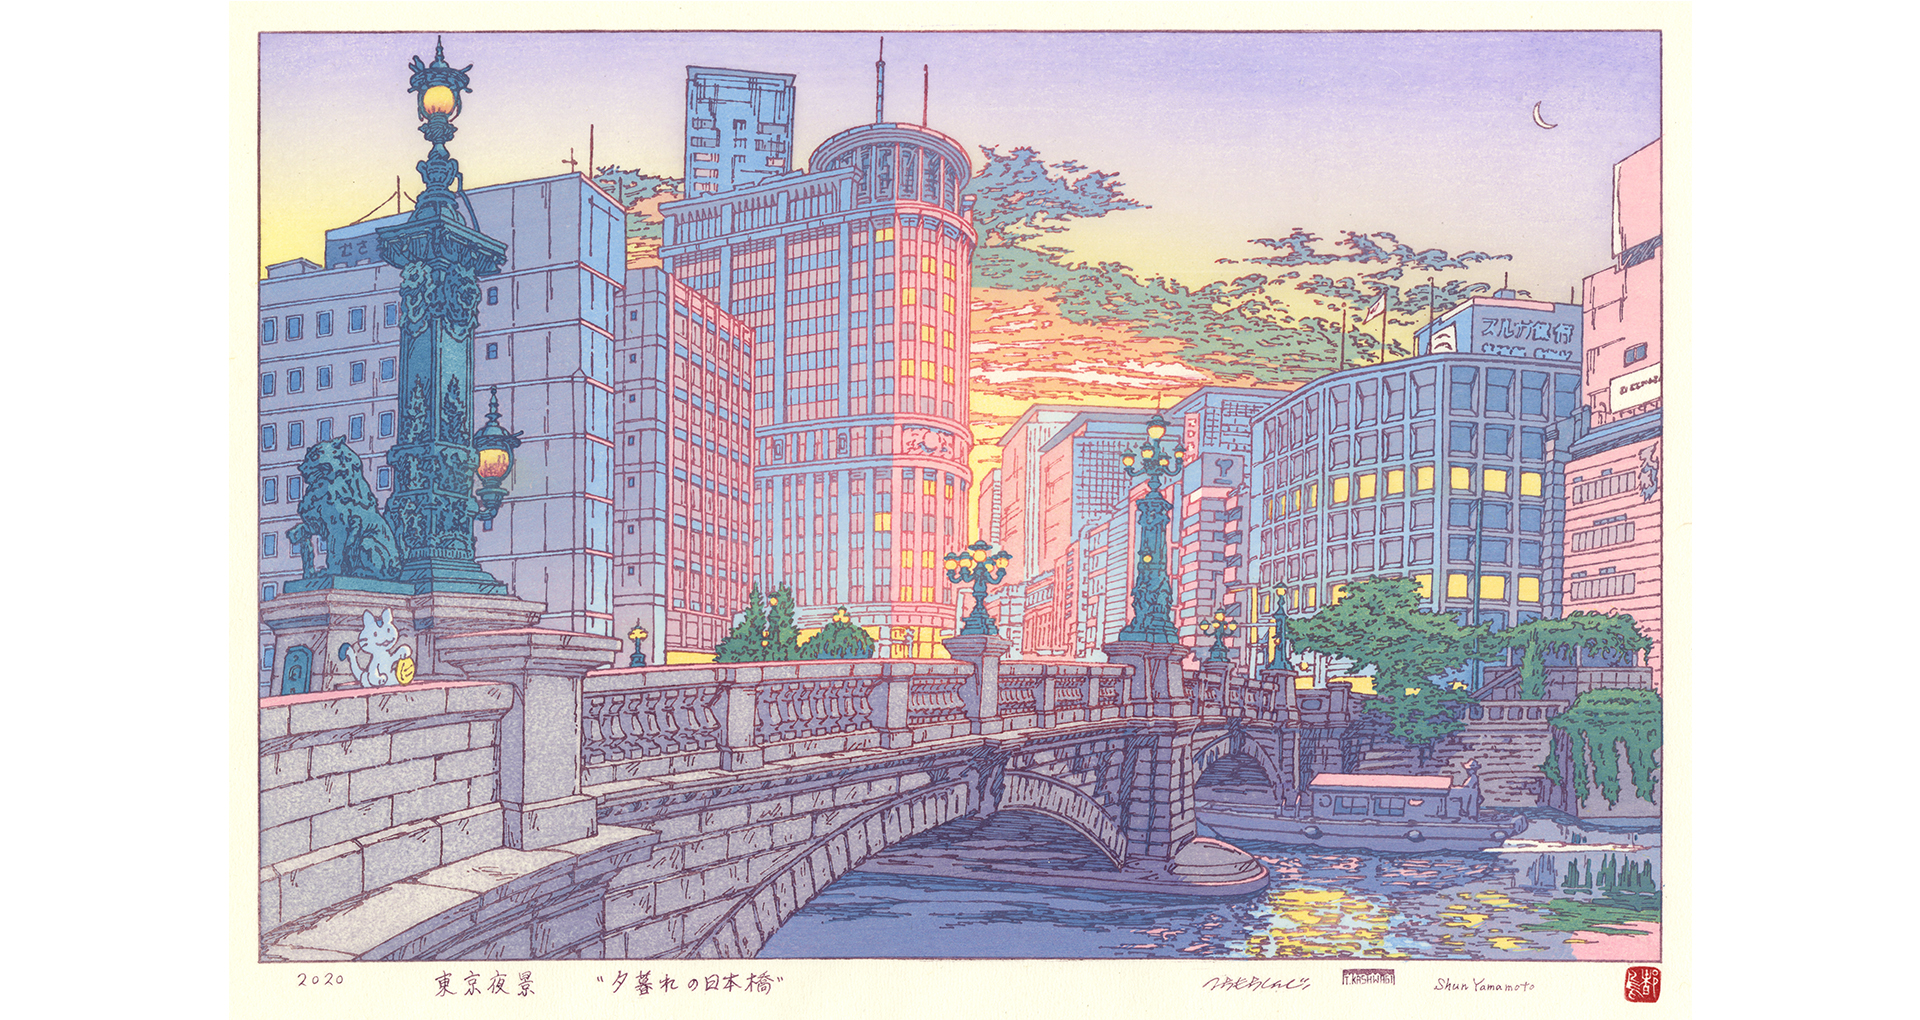 下町を愛するイラストレーターが描く 懐かしくて新しい日本橋の姿 現代に浮世絵を蘇らせる 令和新版画 プロジェクトとは Bridgine ブリジン